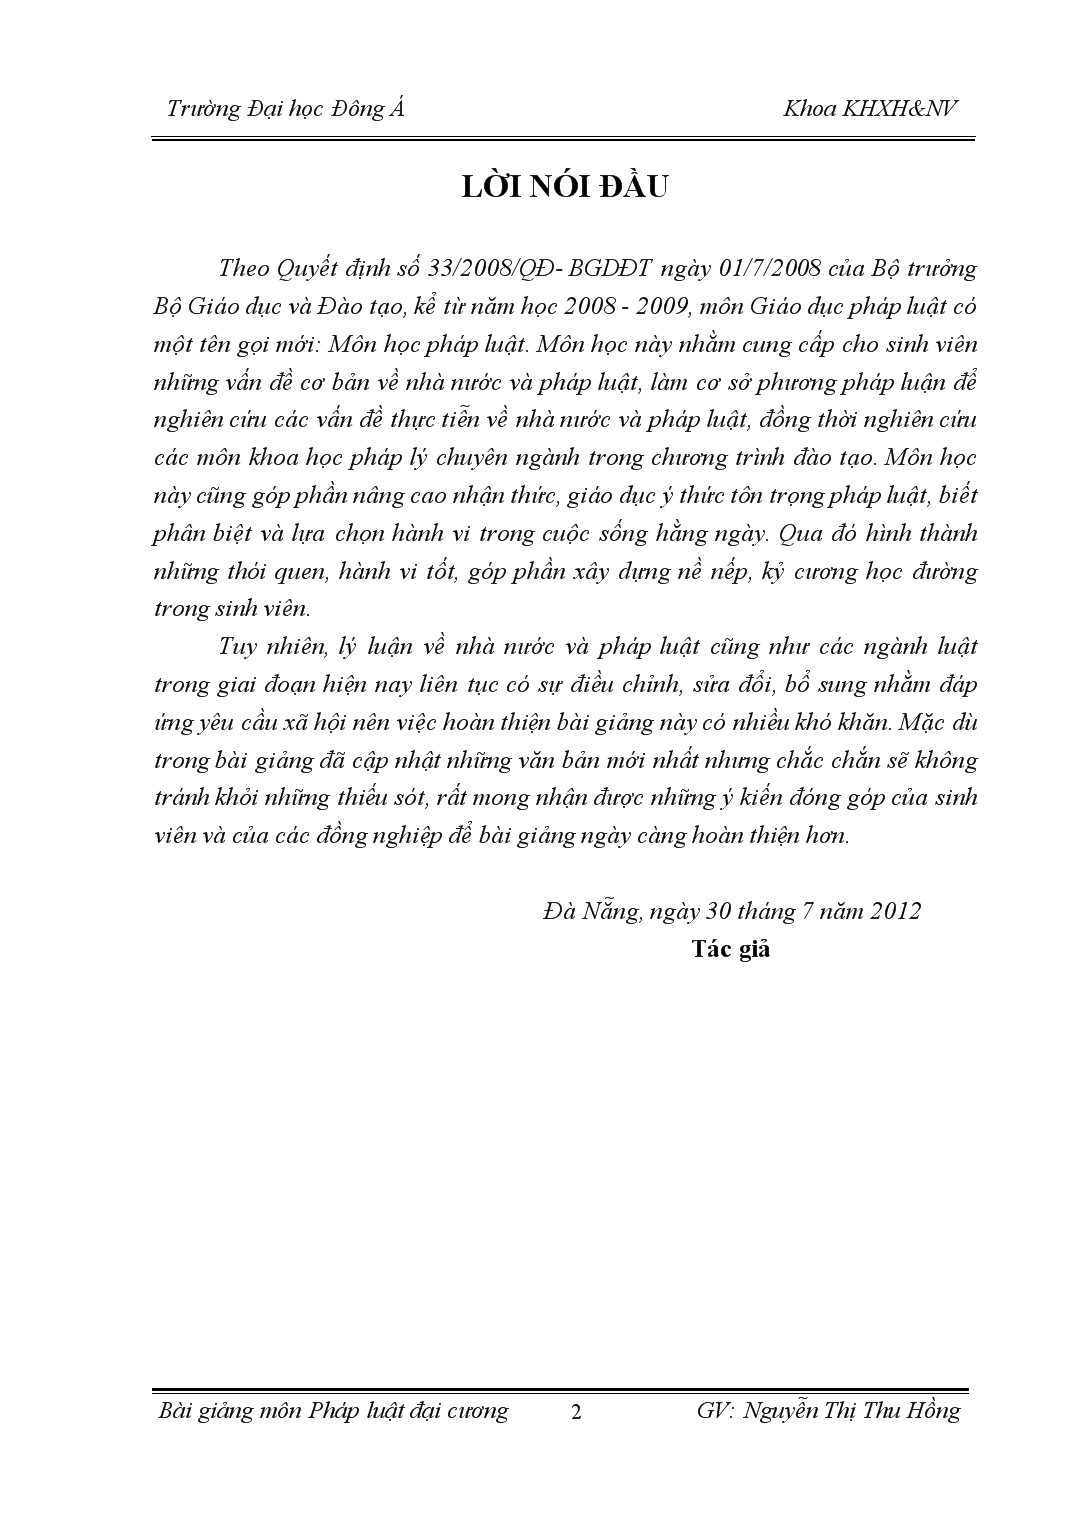 Bài giảng pháp luật đại cương - Nguyễn Thị Thu Hồng trang 2